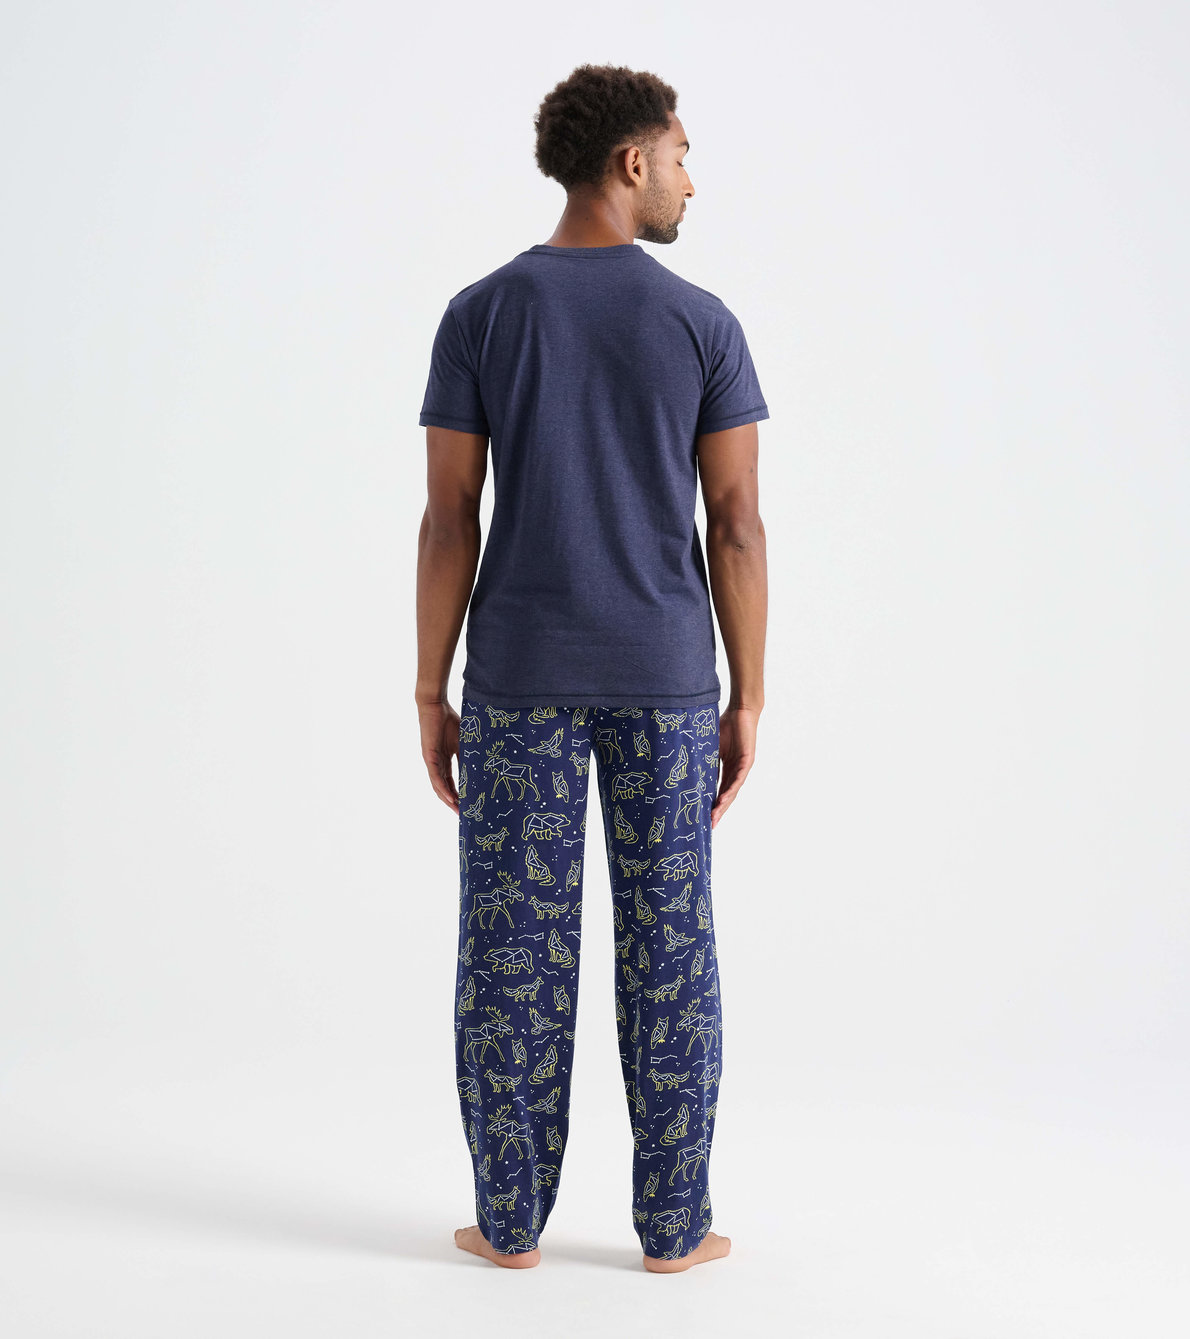 Agrandir l'image de Pantalon de pyjama pour homme – Constellations d’animaux